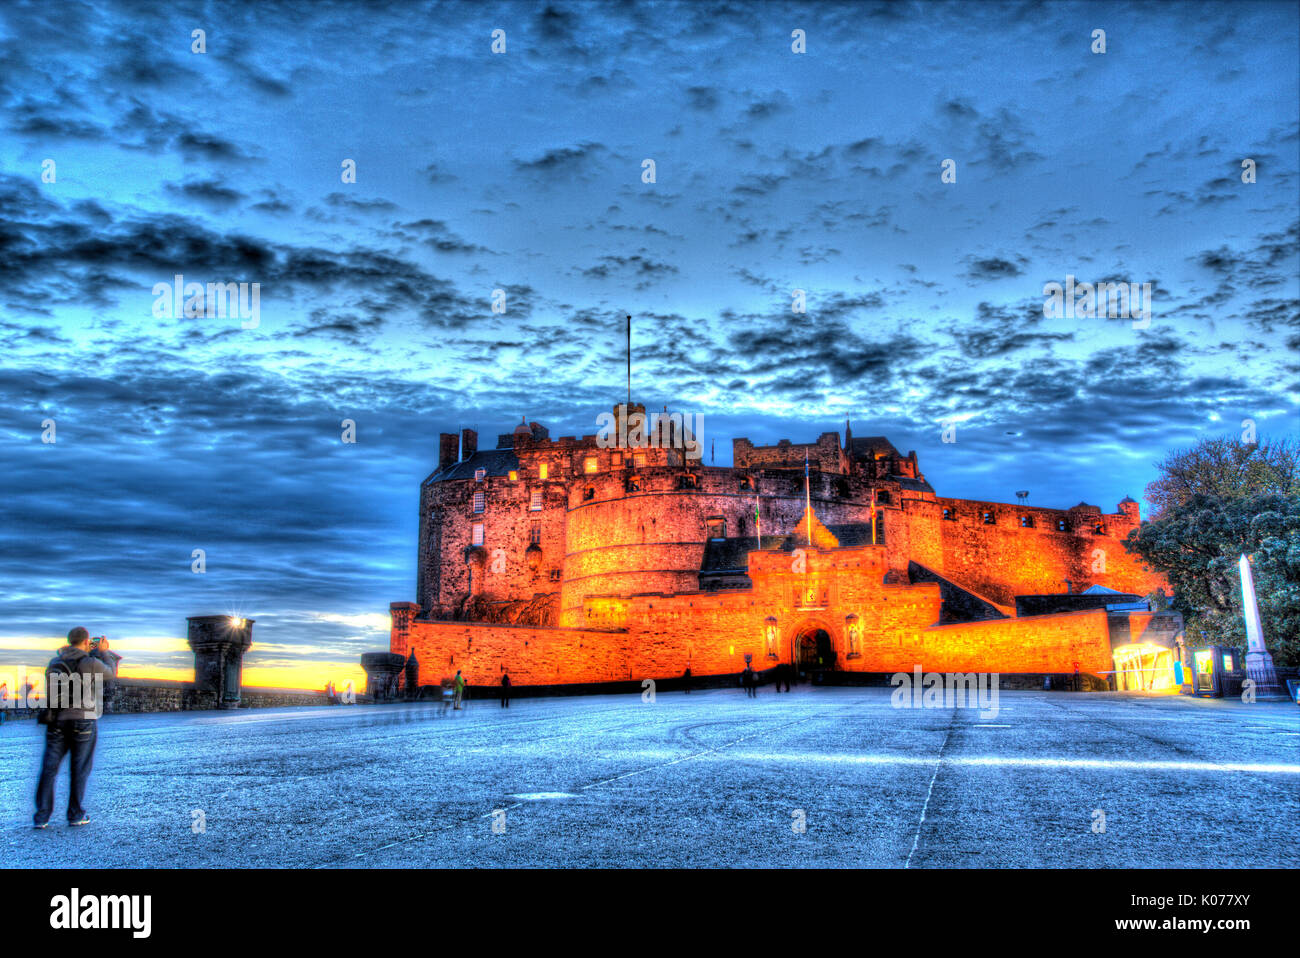 Città di Edimburgo in Scozia. pittoresca vista notturna di l'ingresso principale e la spianata del castello di Edimburgo. Foto Stock